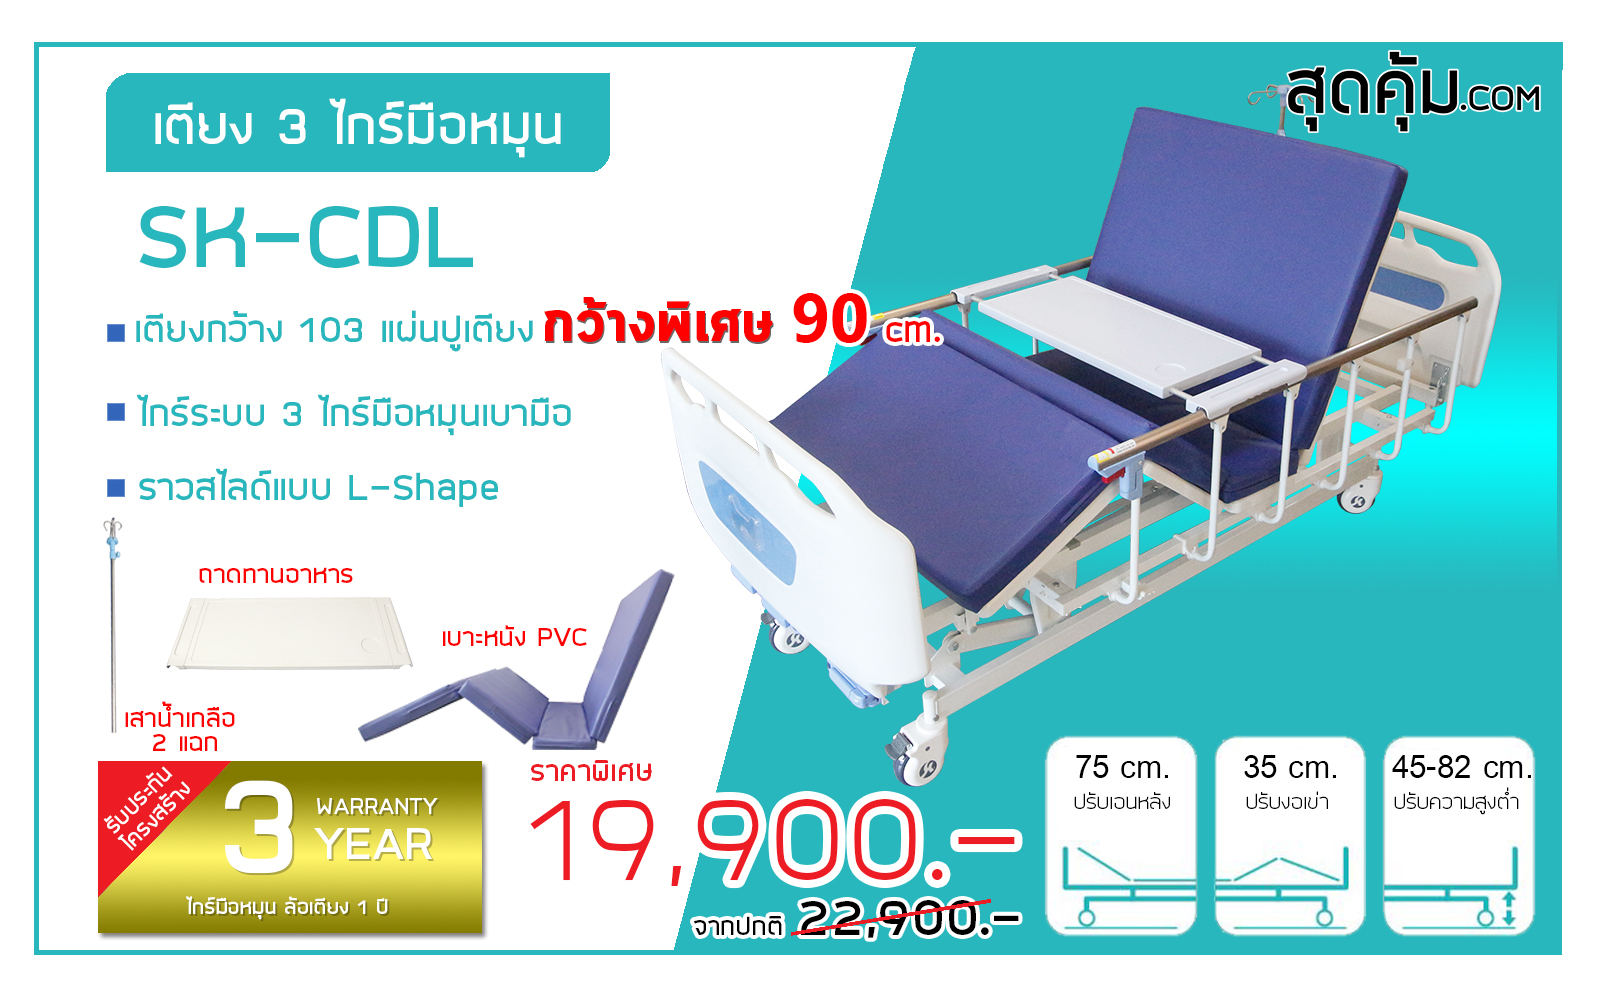 SK-CDL เตียงผู้ป่วยและคนชรา 3 ไกร์ มือหมุน